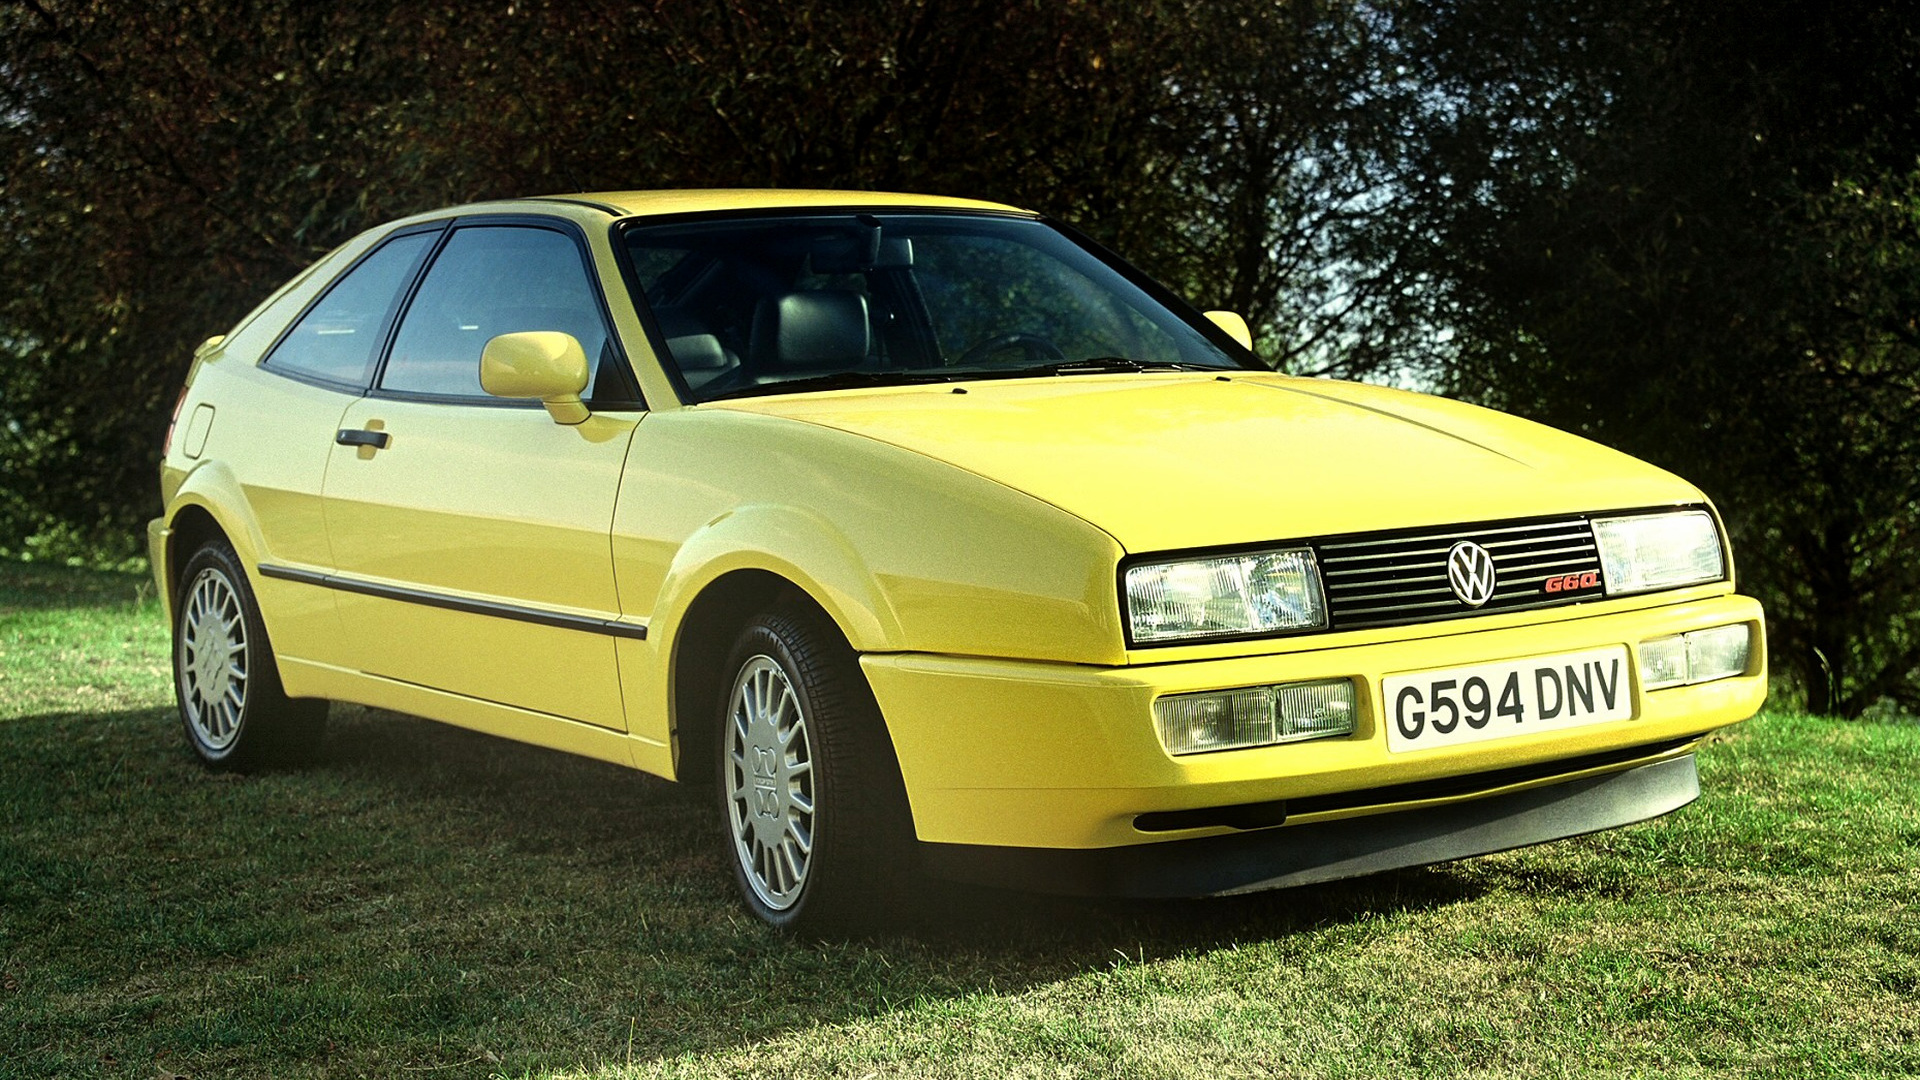 1988 Volkswagen Corrado G60